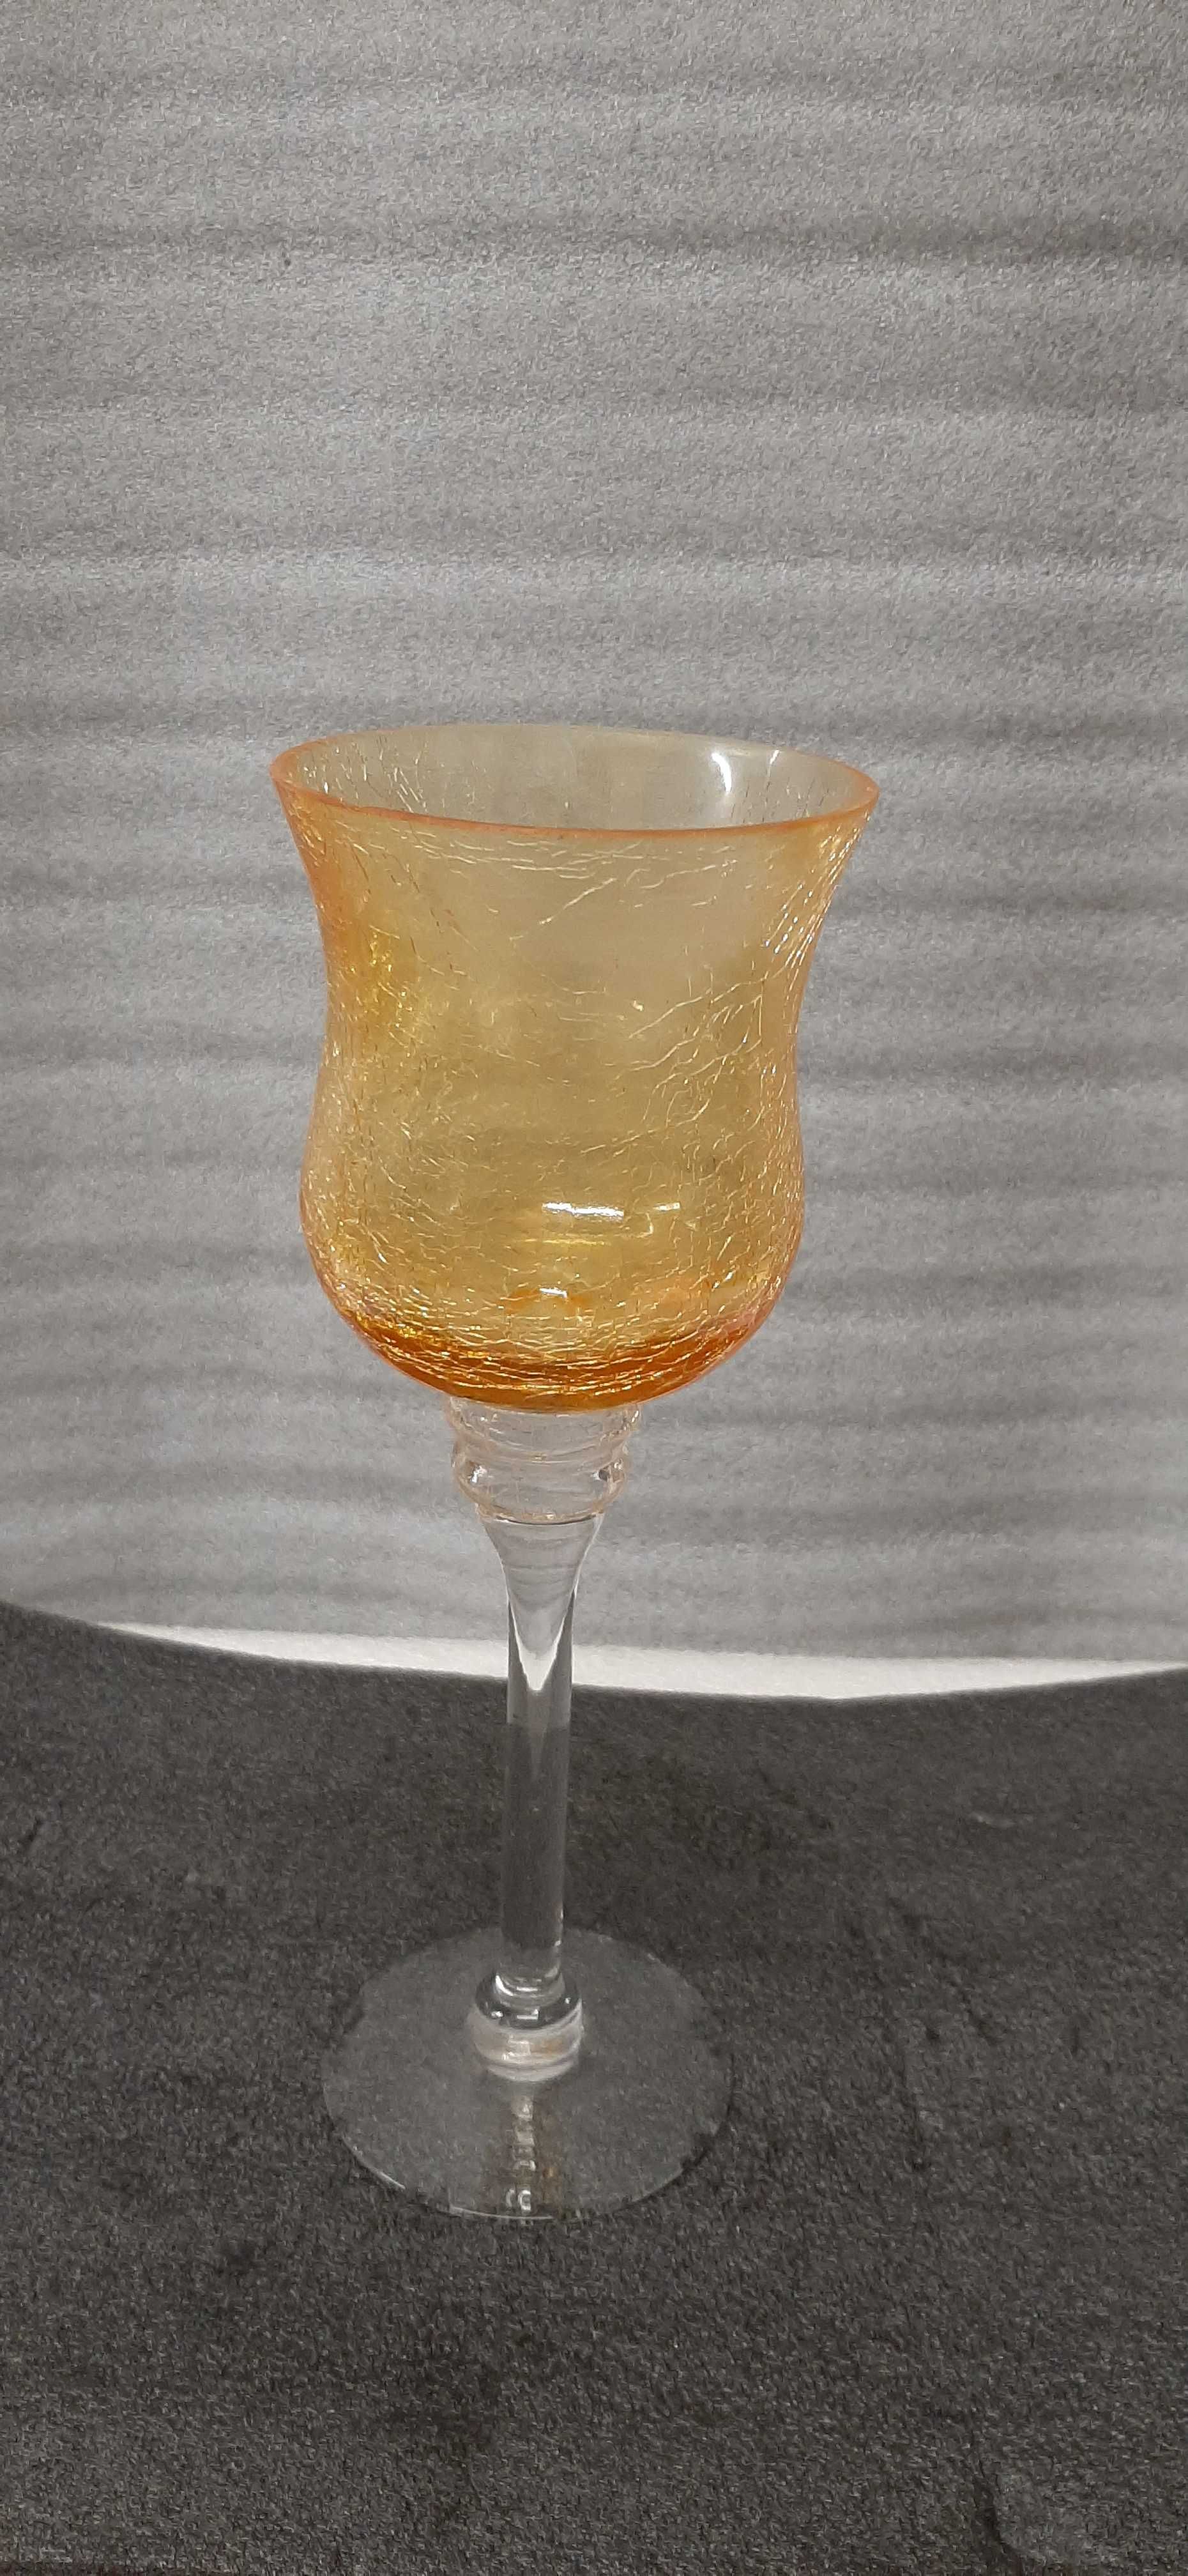 Kielich-świecznik w bursztynowym kolorze vintage.